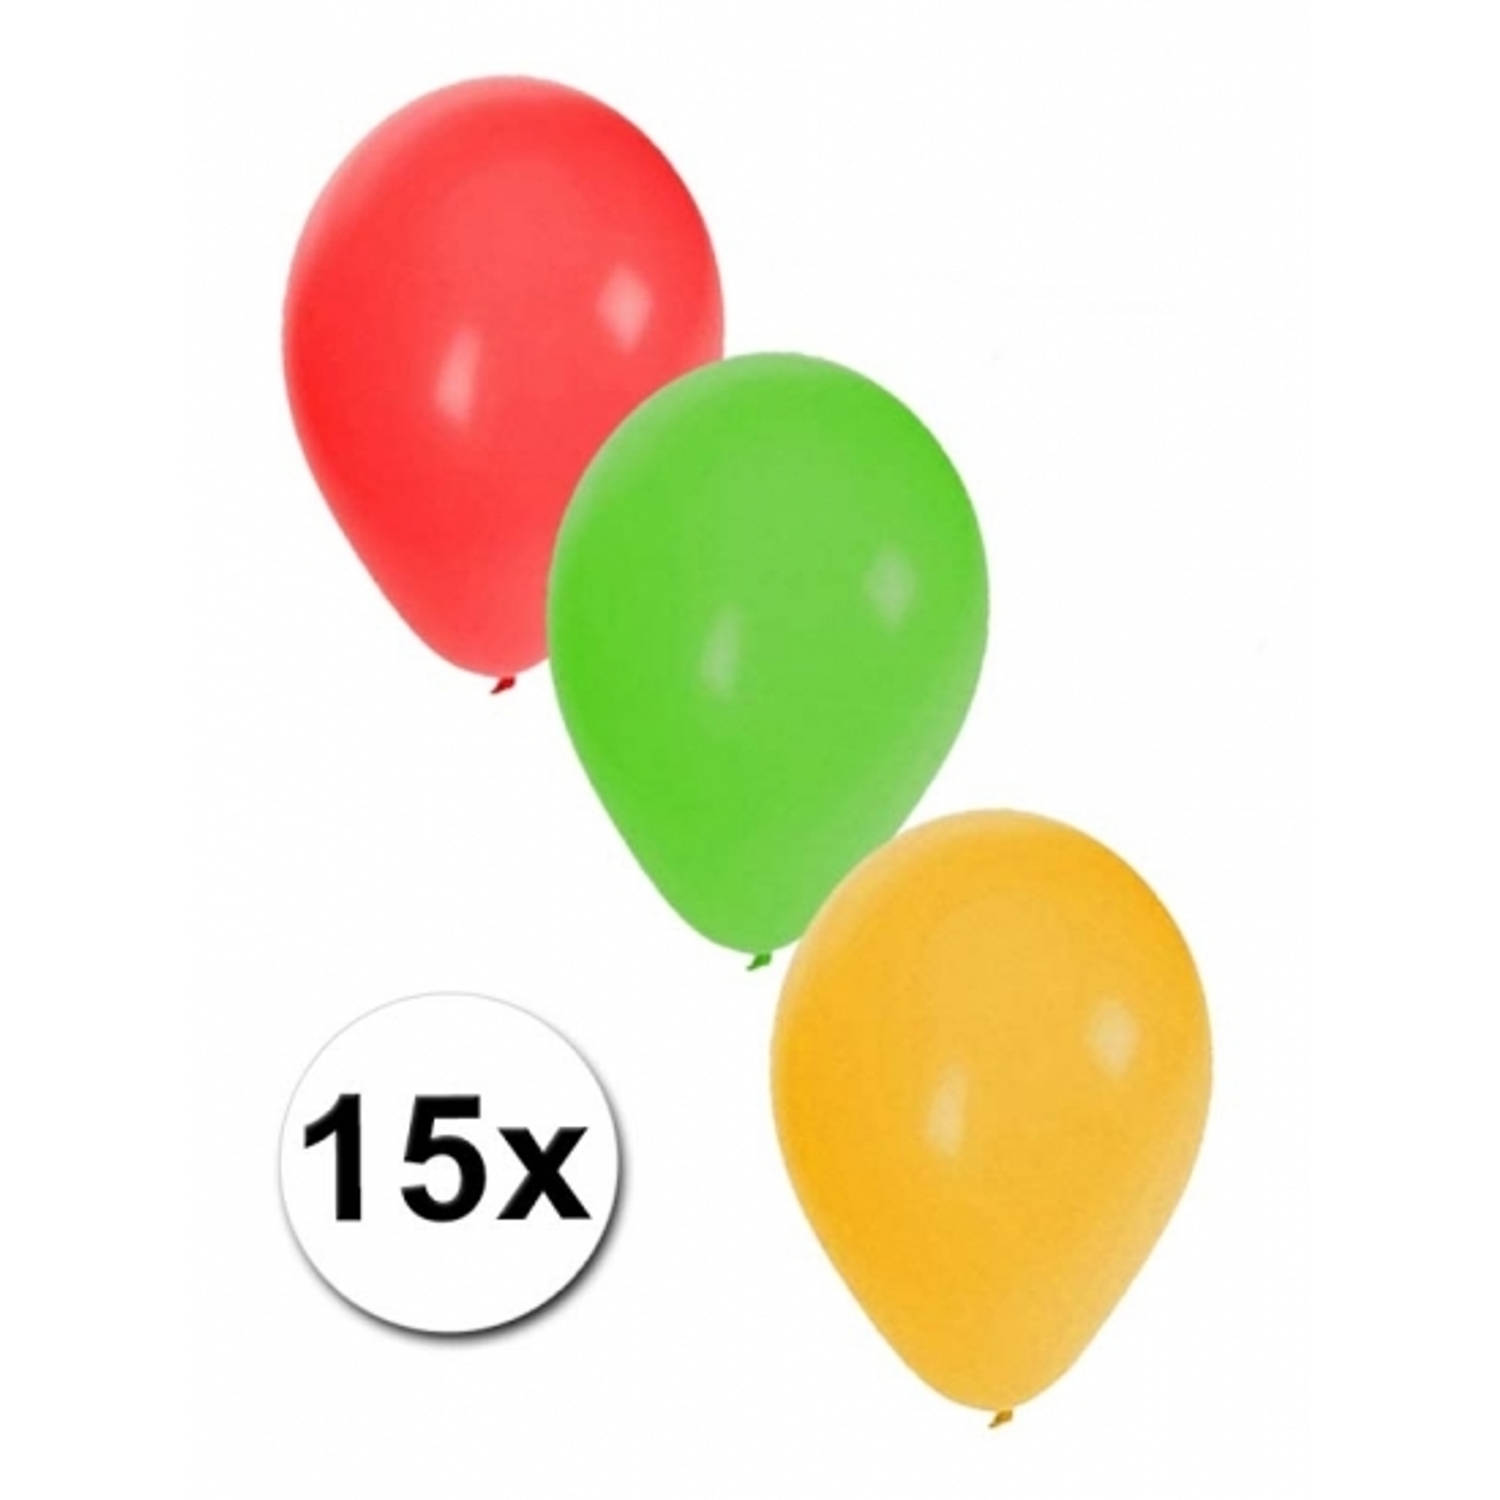 Necklet Duidelijk maken Begin Ballonnen rood/geel/groen 15x stuks - Ballonnen | Blokker